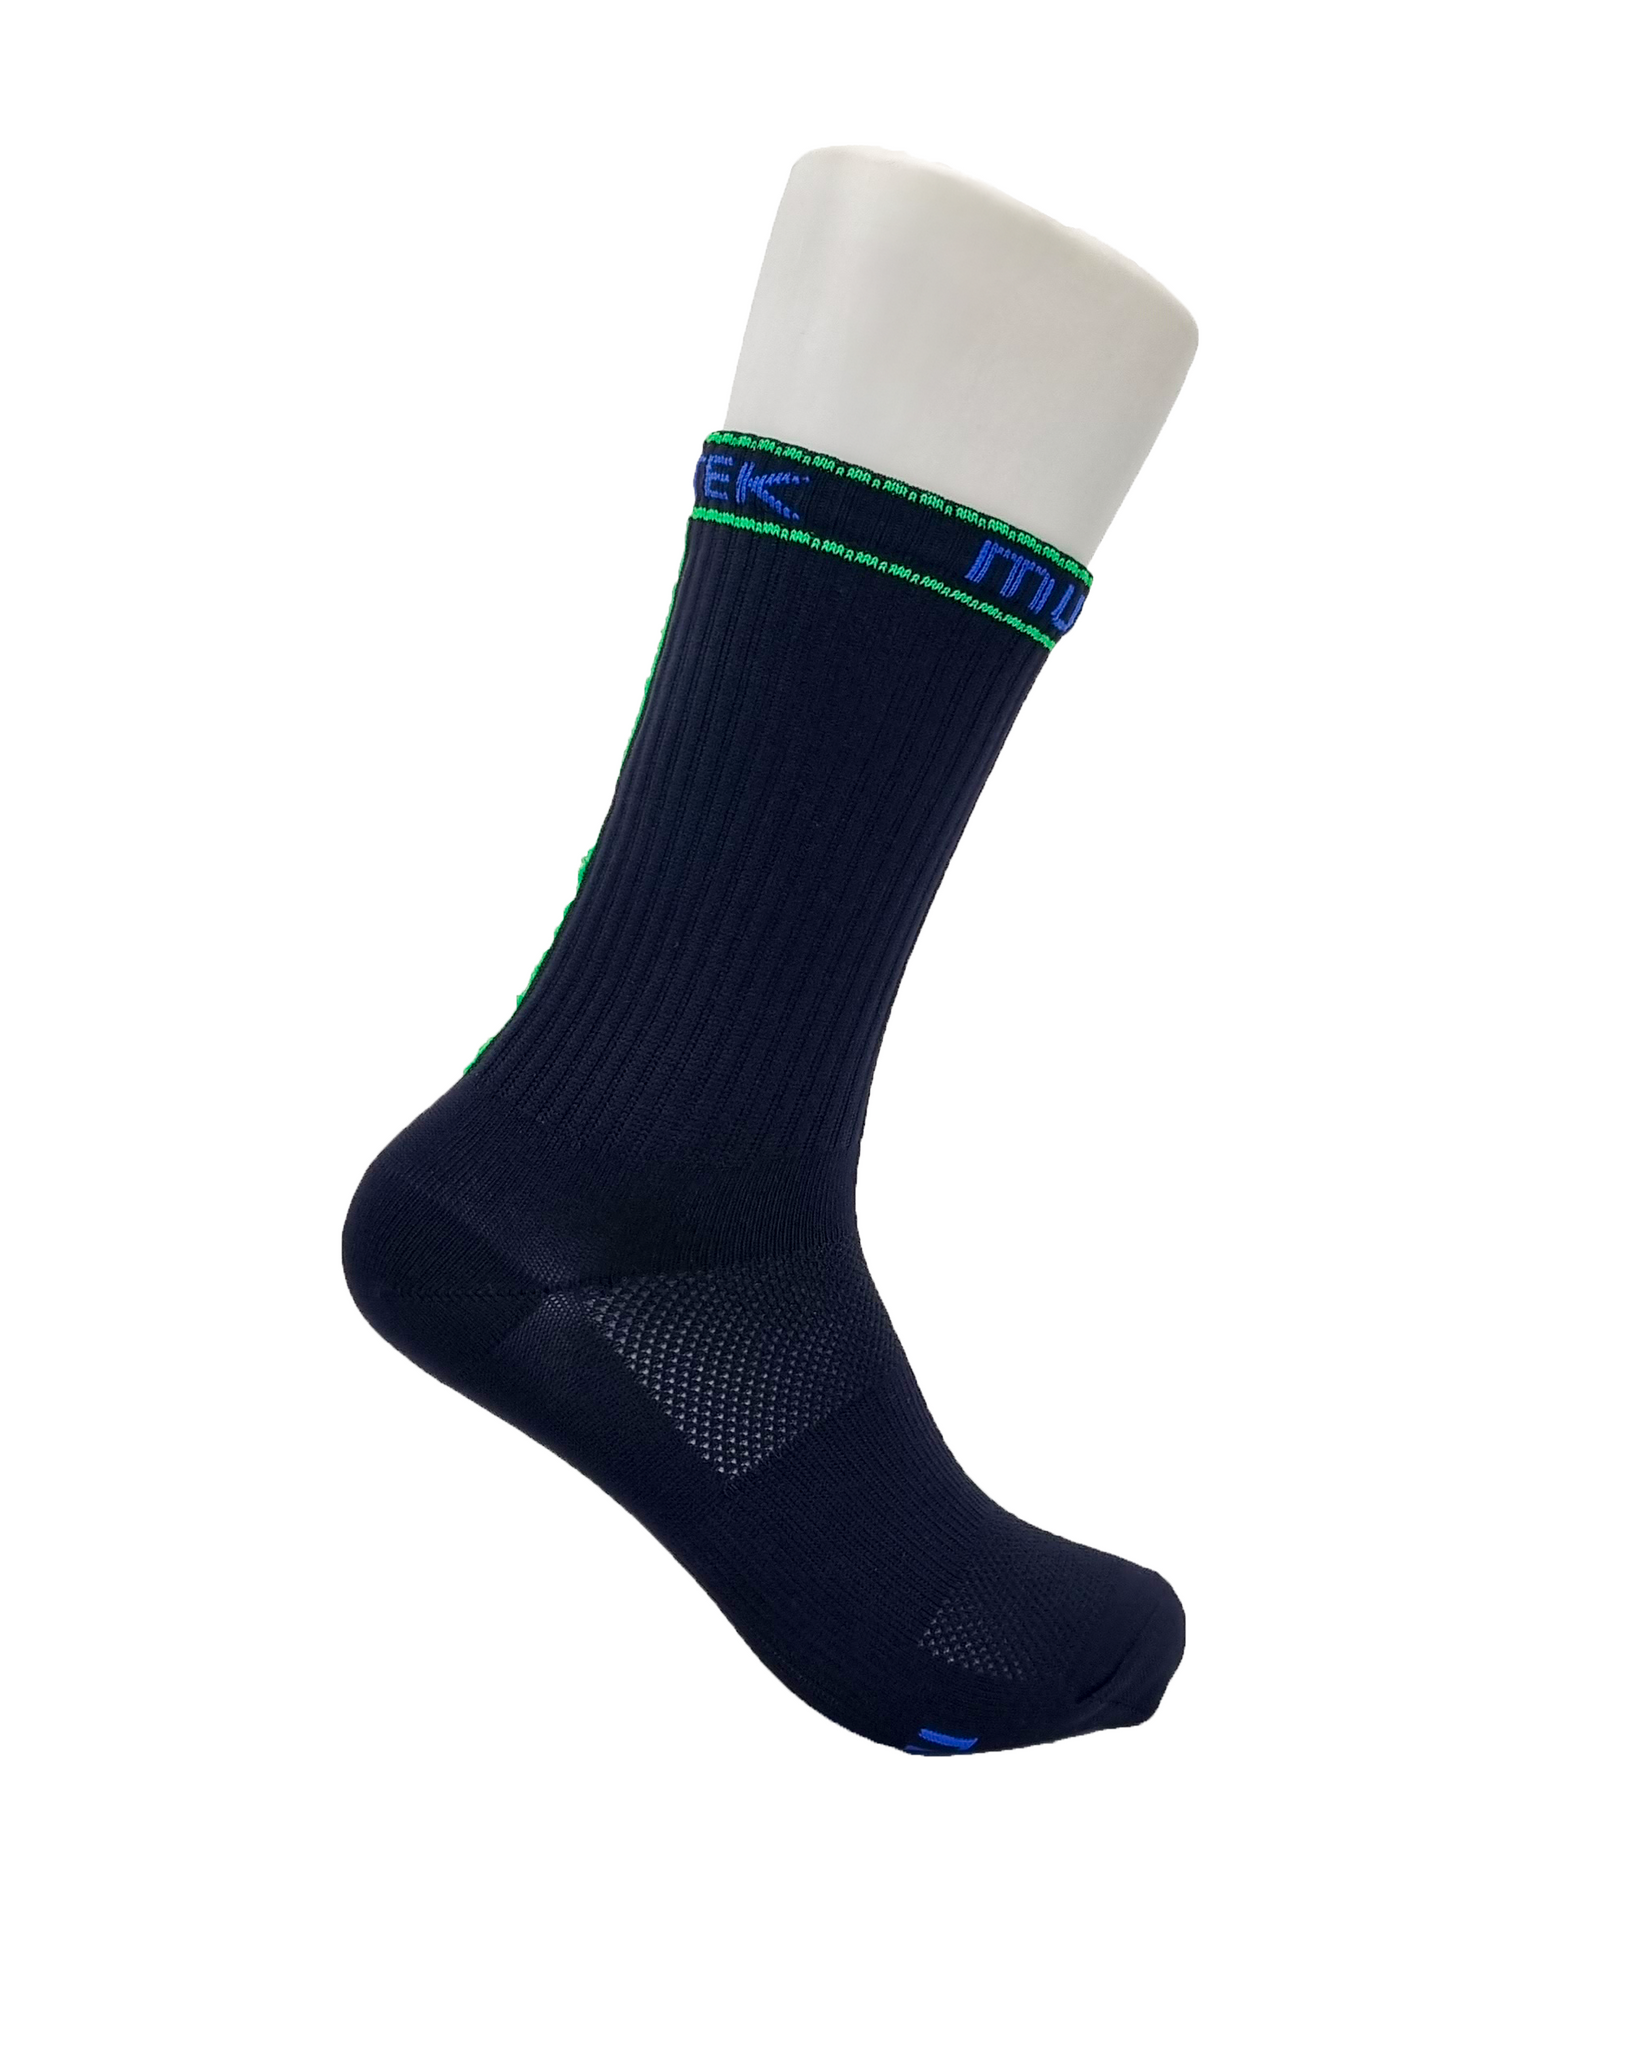 Socks (Black + Green/Blue) | Cadie Desbiens-Desmeules